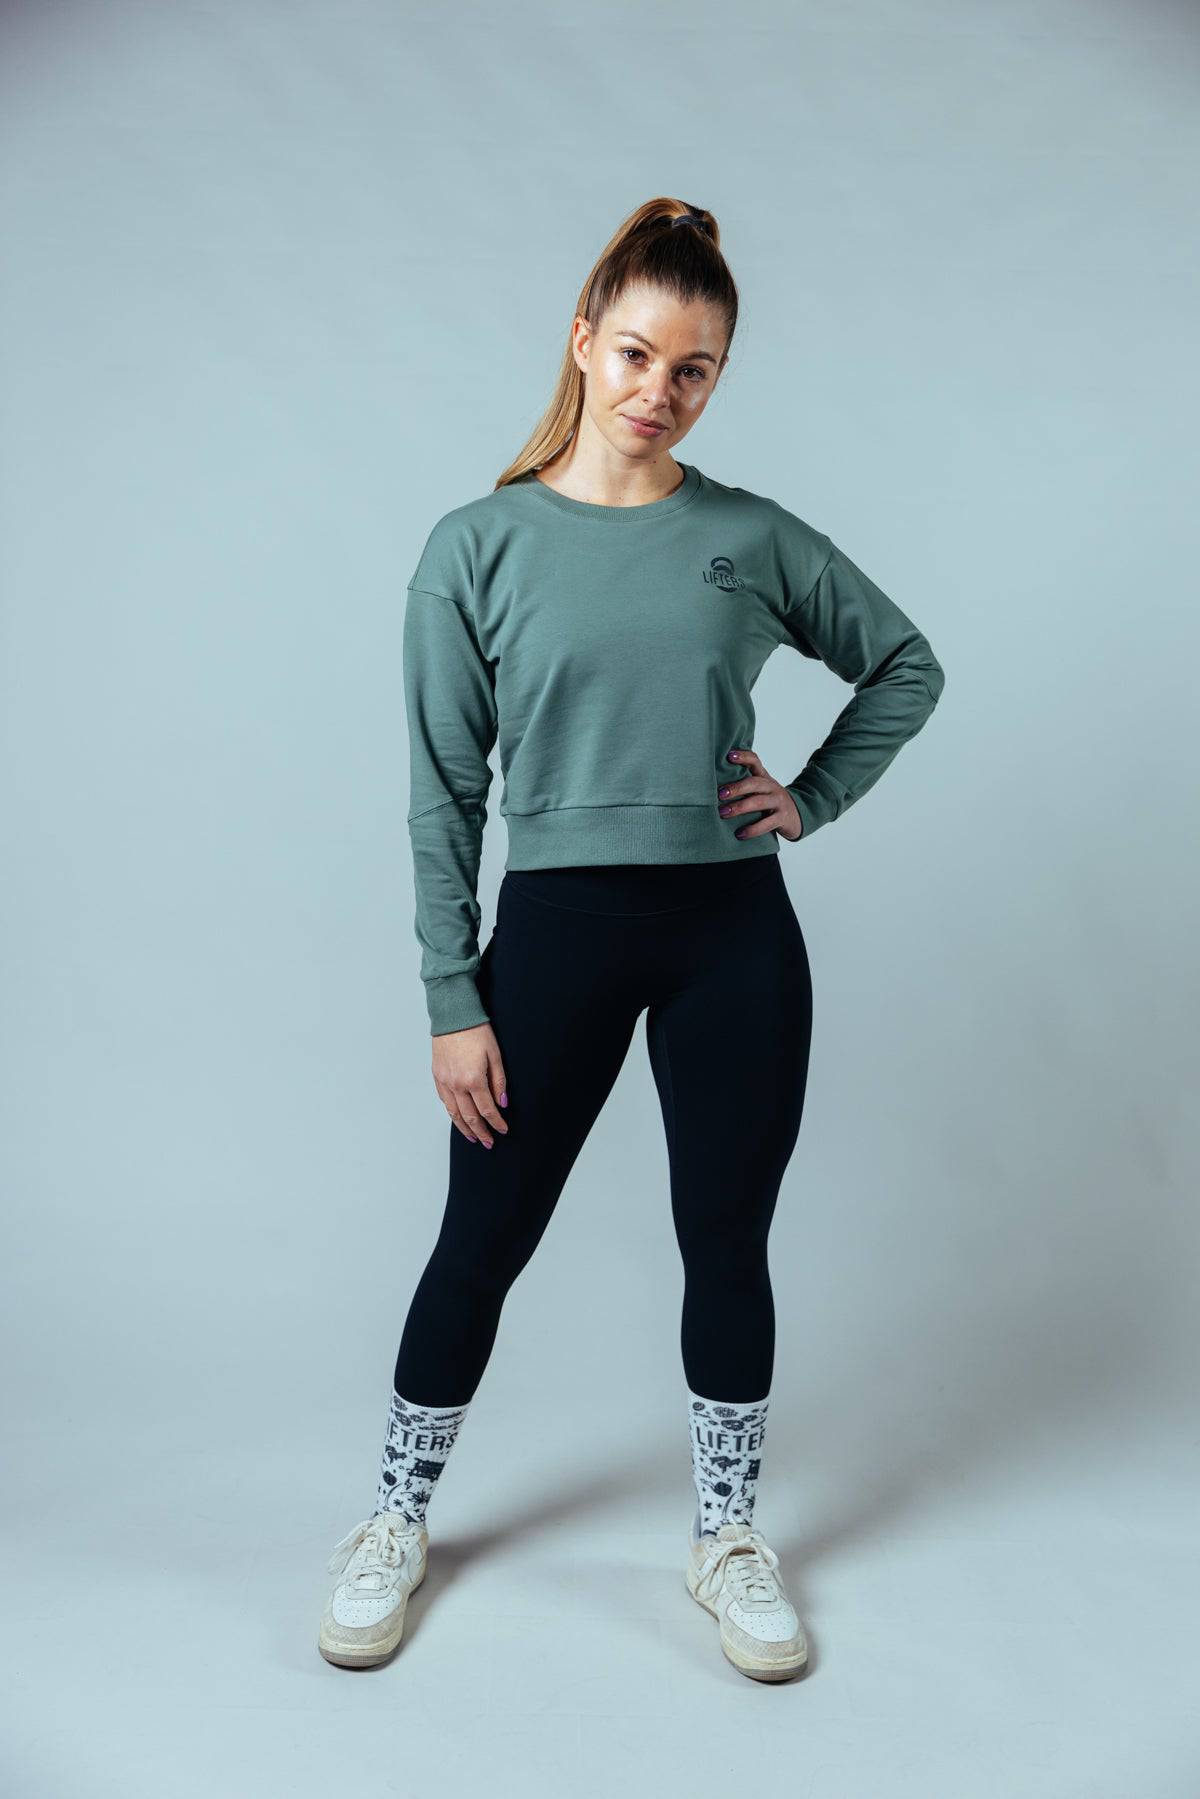 Street Oversize Crop Sweater - Lifters Wear